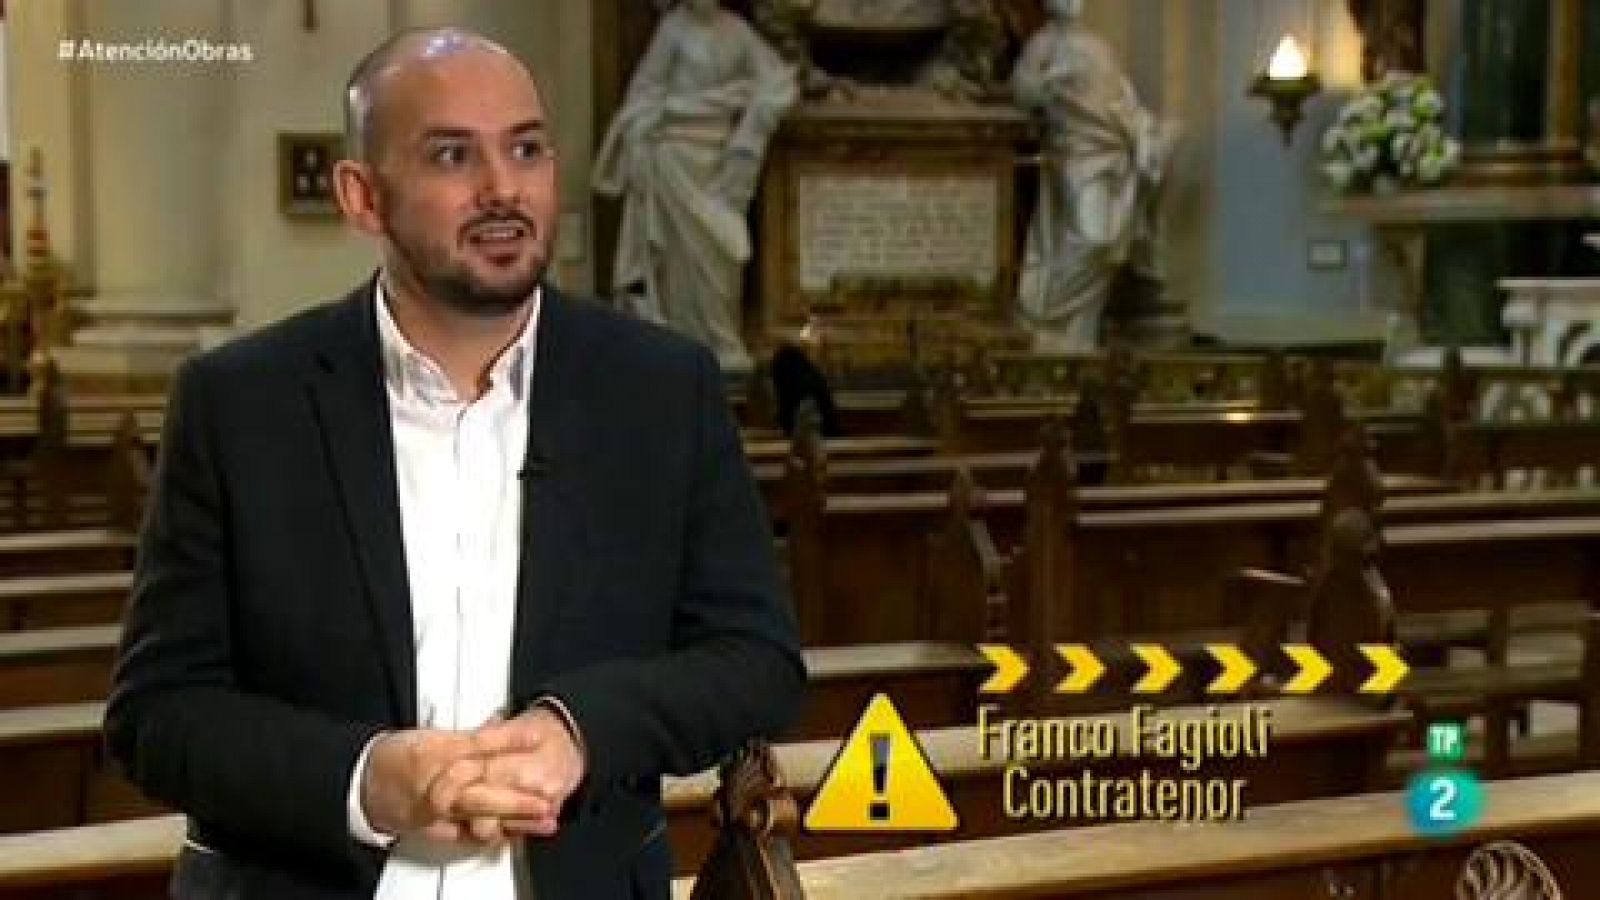 Atención obras: Franco Fagioli, contratenor | RTVE Play